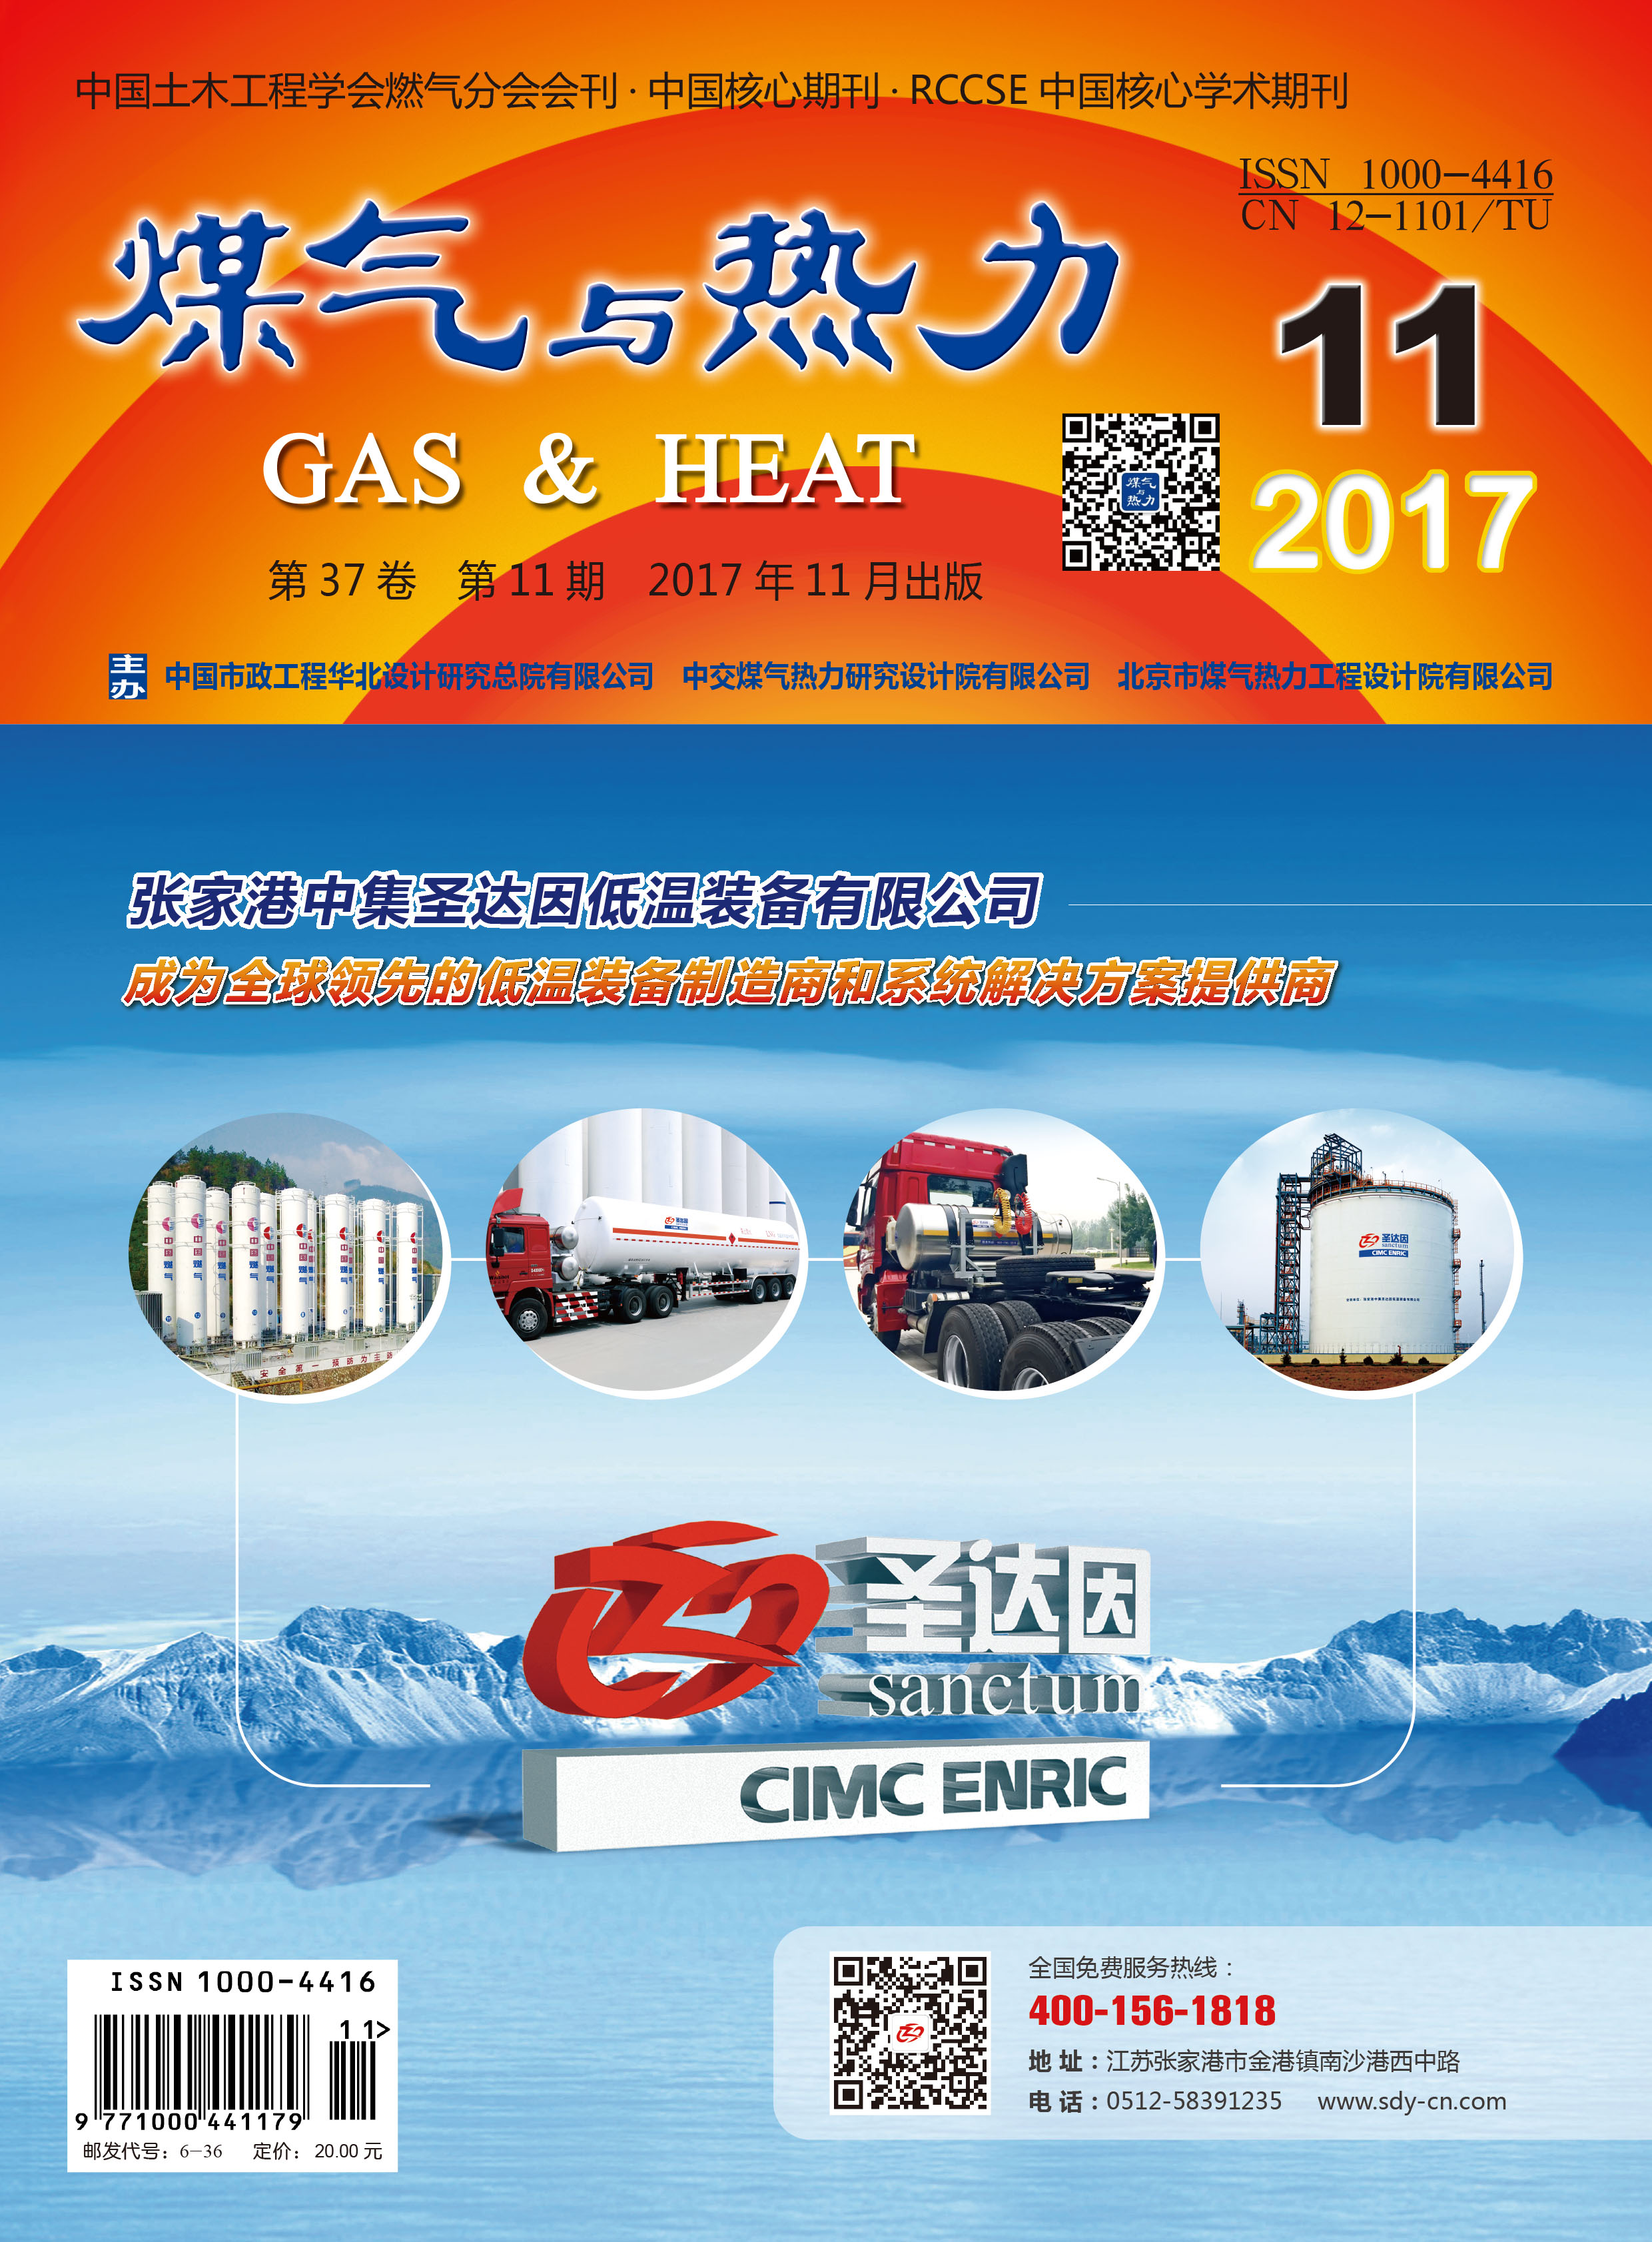 《煤气与热力》2017年11月刊